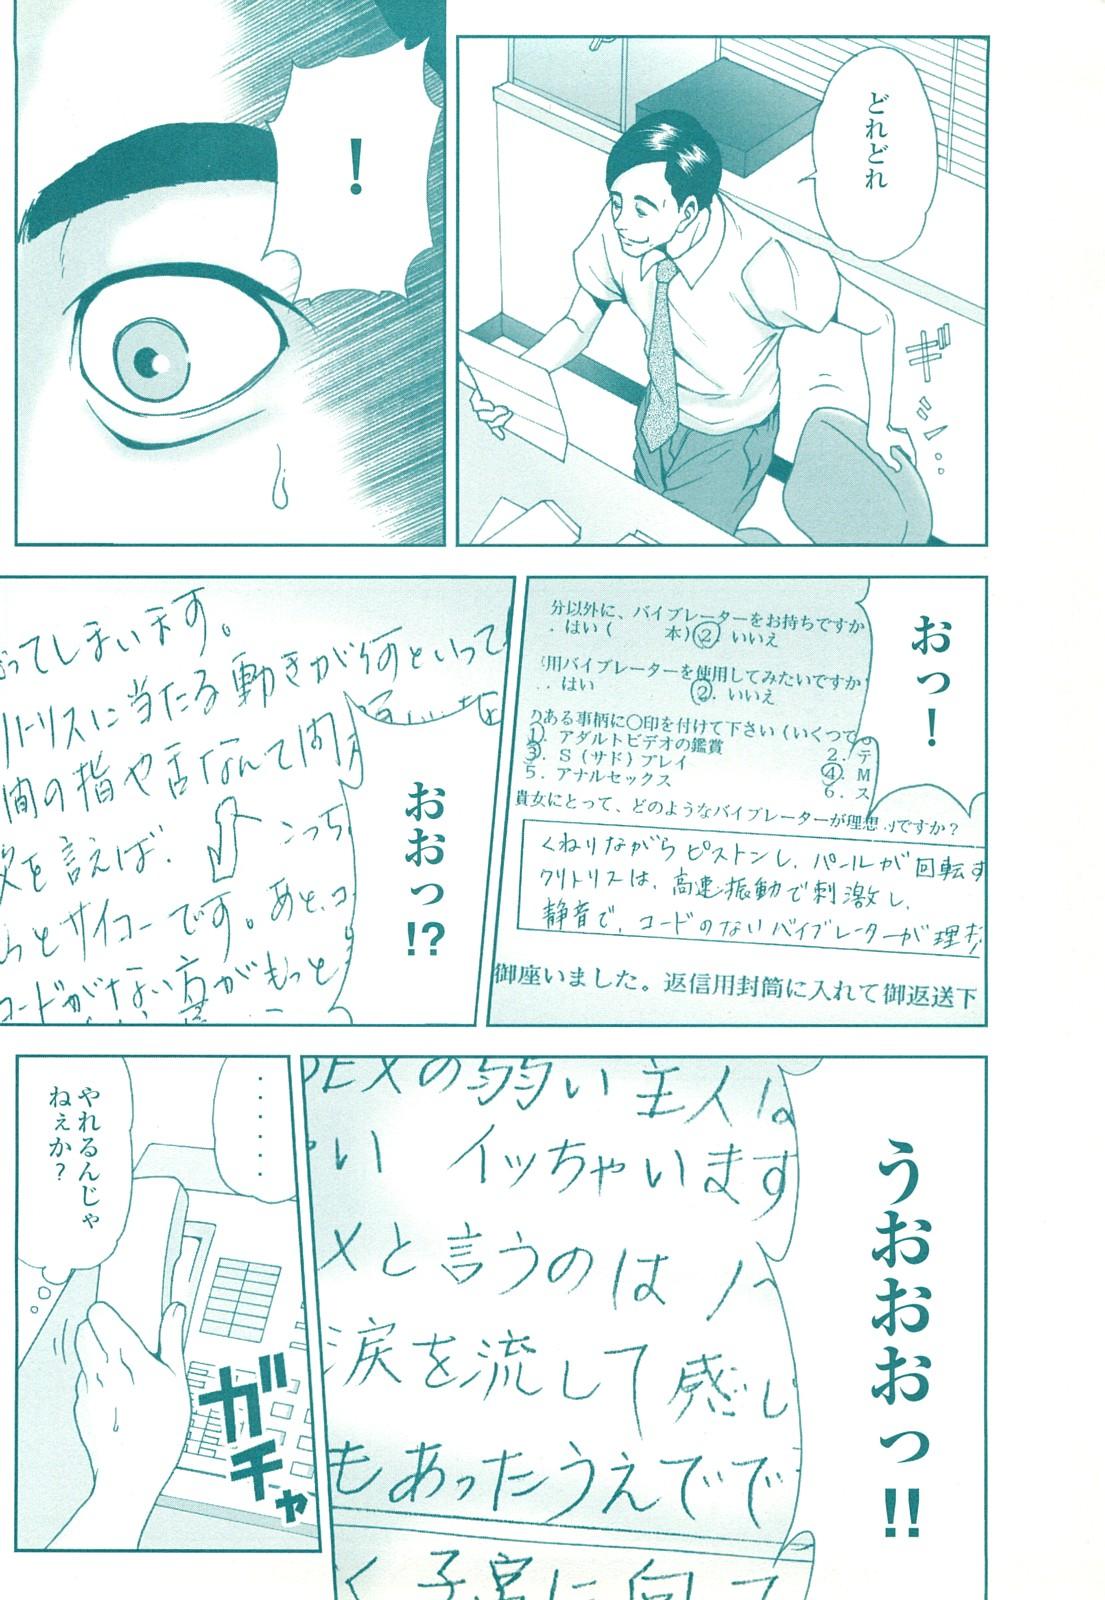 コミック裏モノJAPAN Vol.18 今井のりたつスペシャル号 167